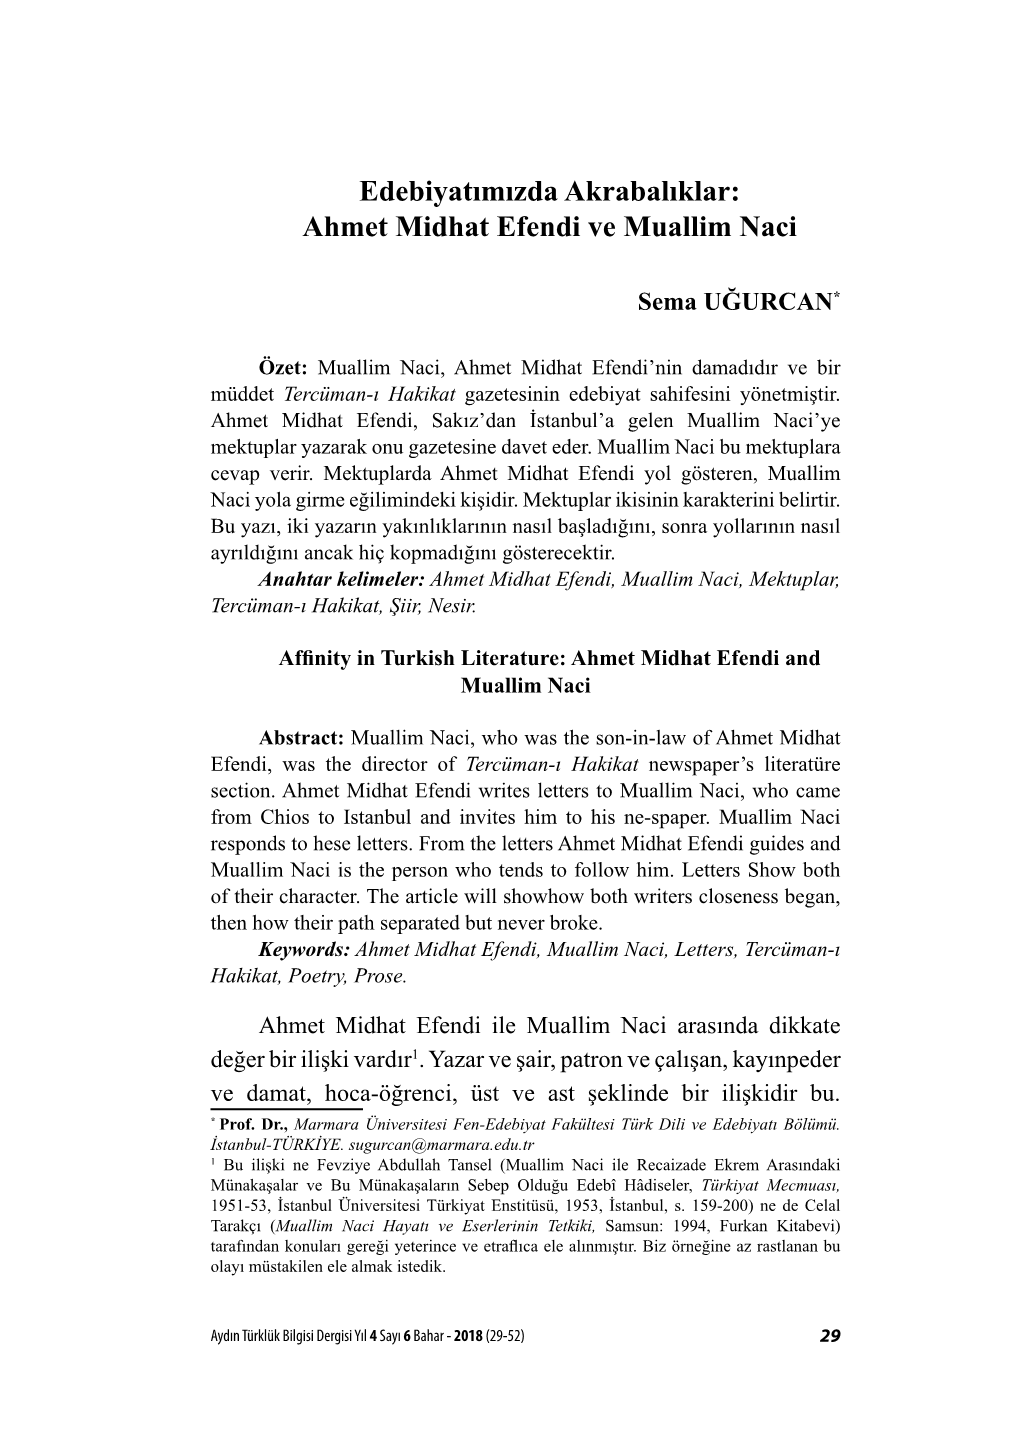 Edebiyatımızda Akrabalıklar: Ahmet Midhat Efendi Ve Muallim Naci